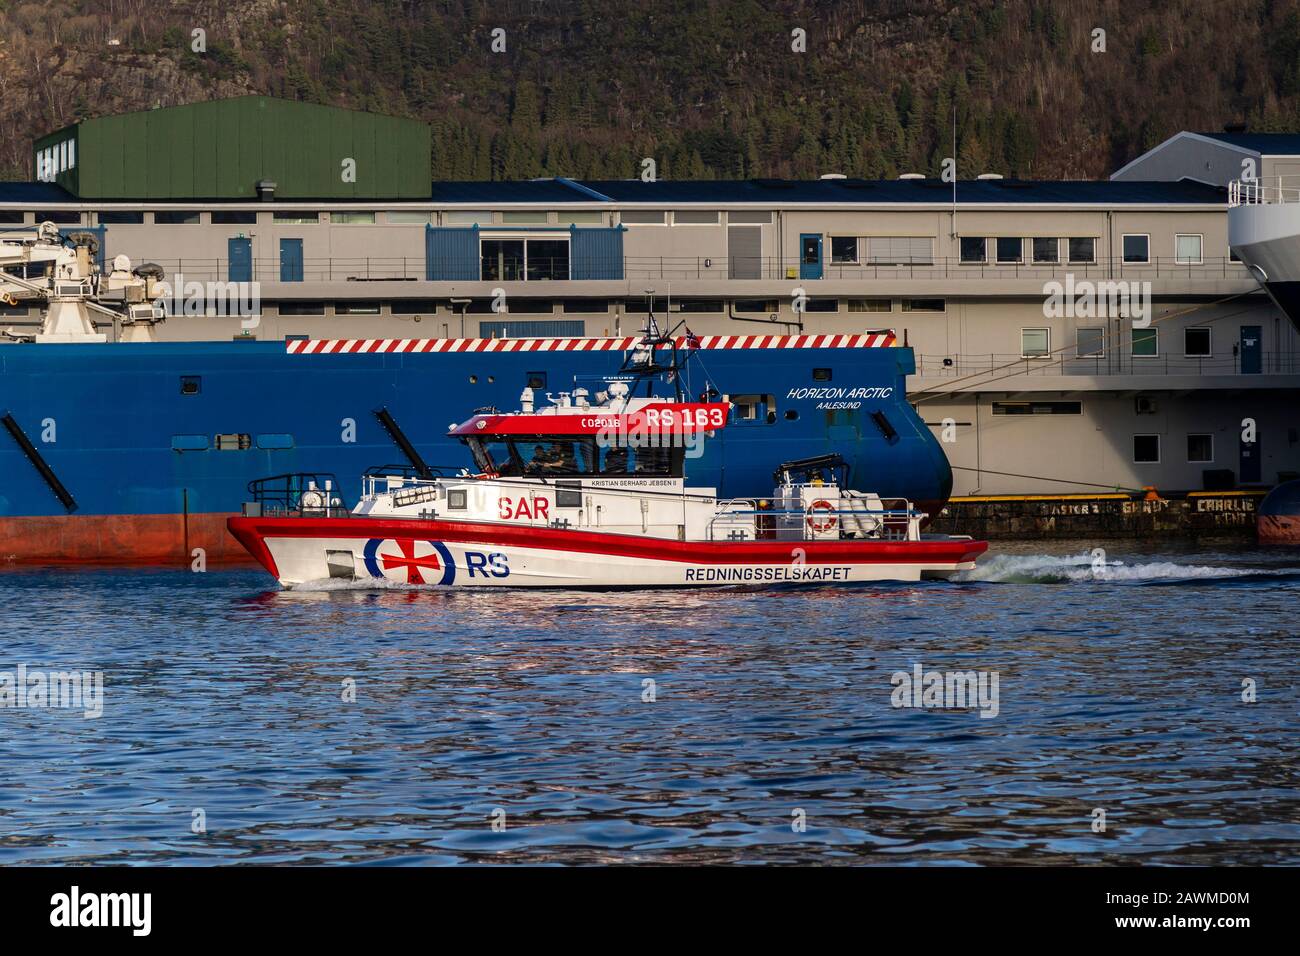 Bateau de sauvetage maritime à grande vitesse Kristian Gerhard Jebsen II dans le port de Bergen, Norvège. Passage du navire d'approvisionnement offshore Horizon Arctic Banque D'Images